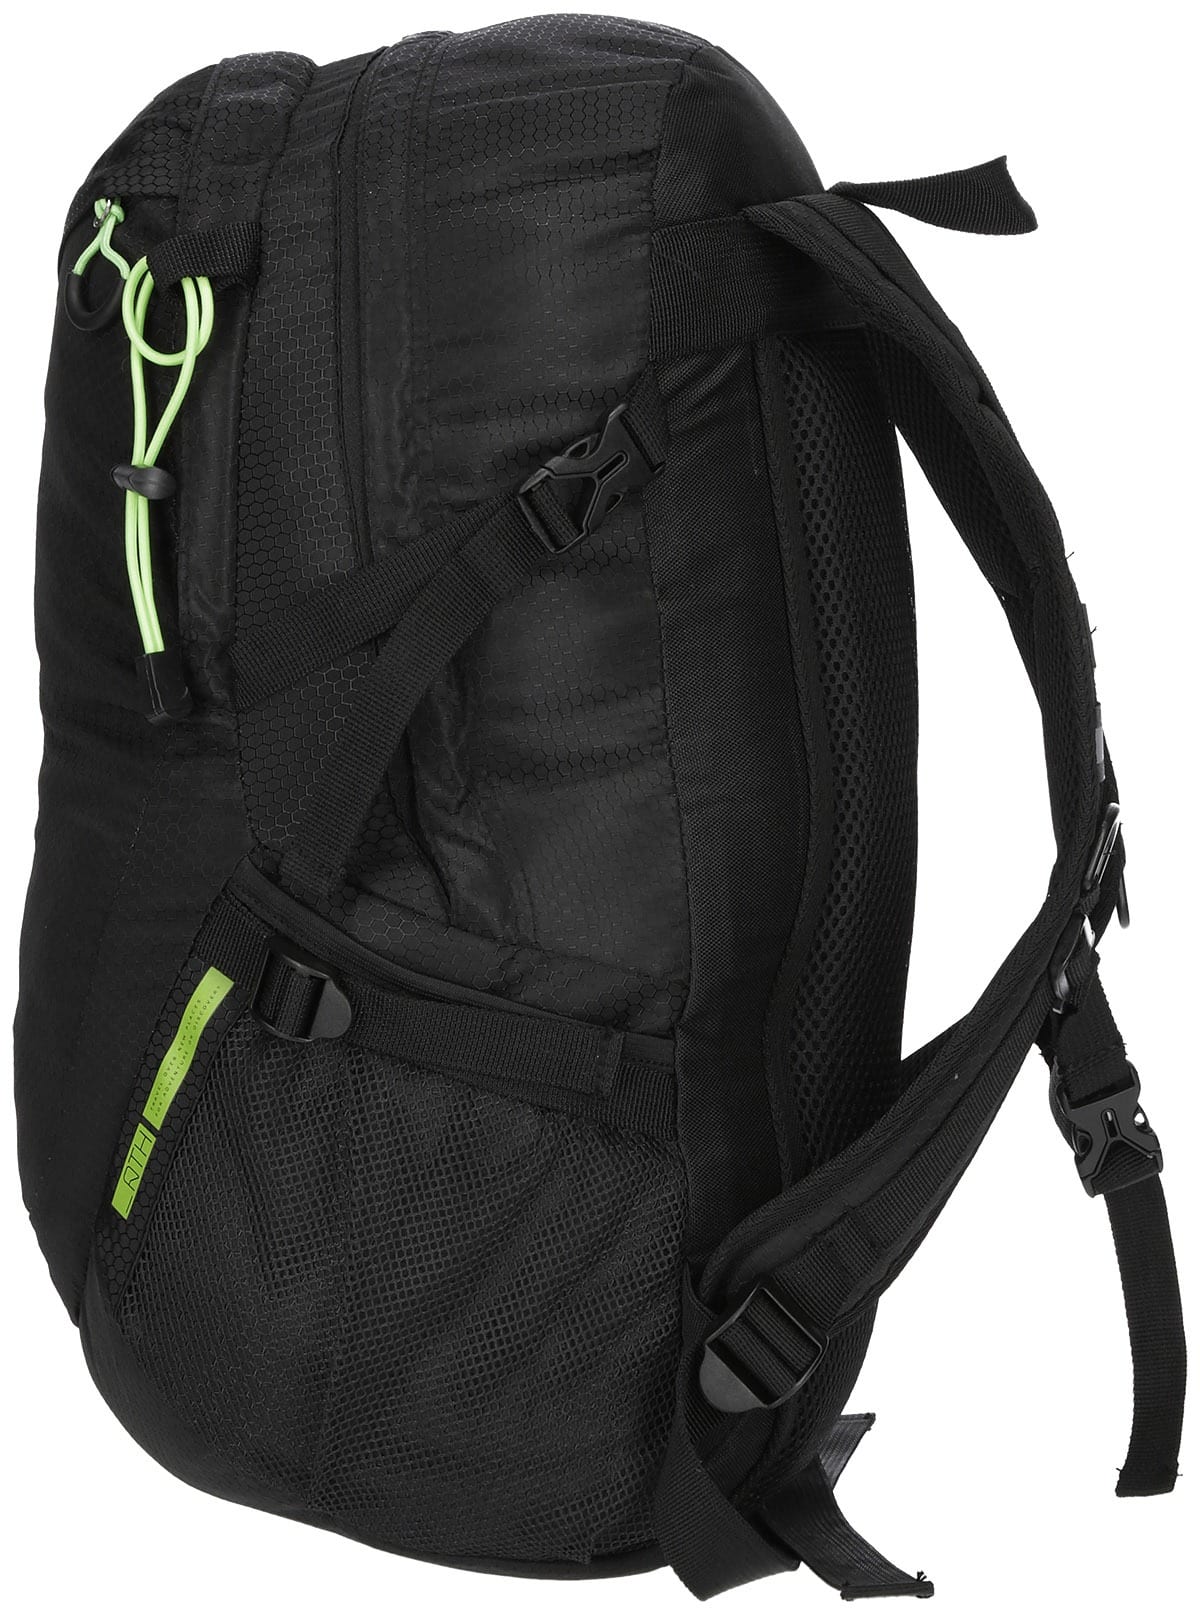 4F Urban Backpack Black pcu017-20s b